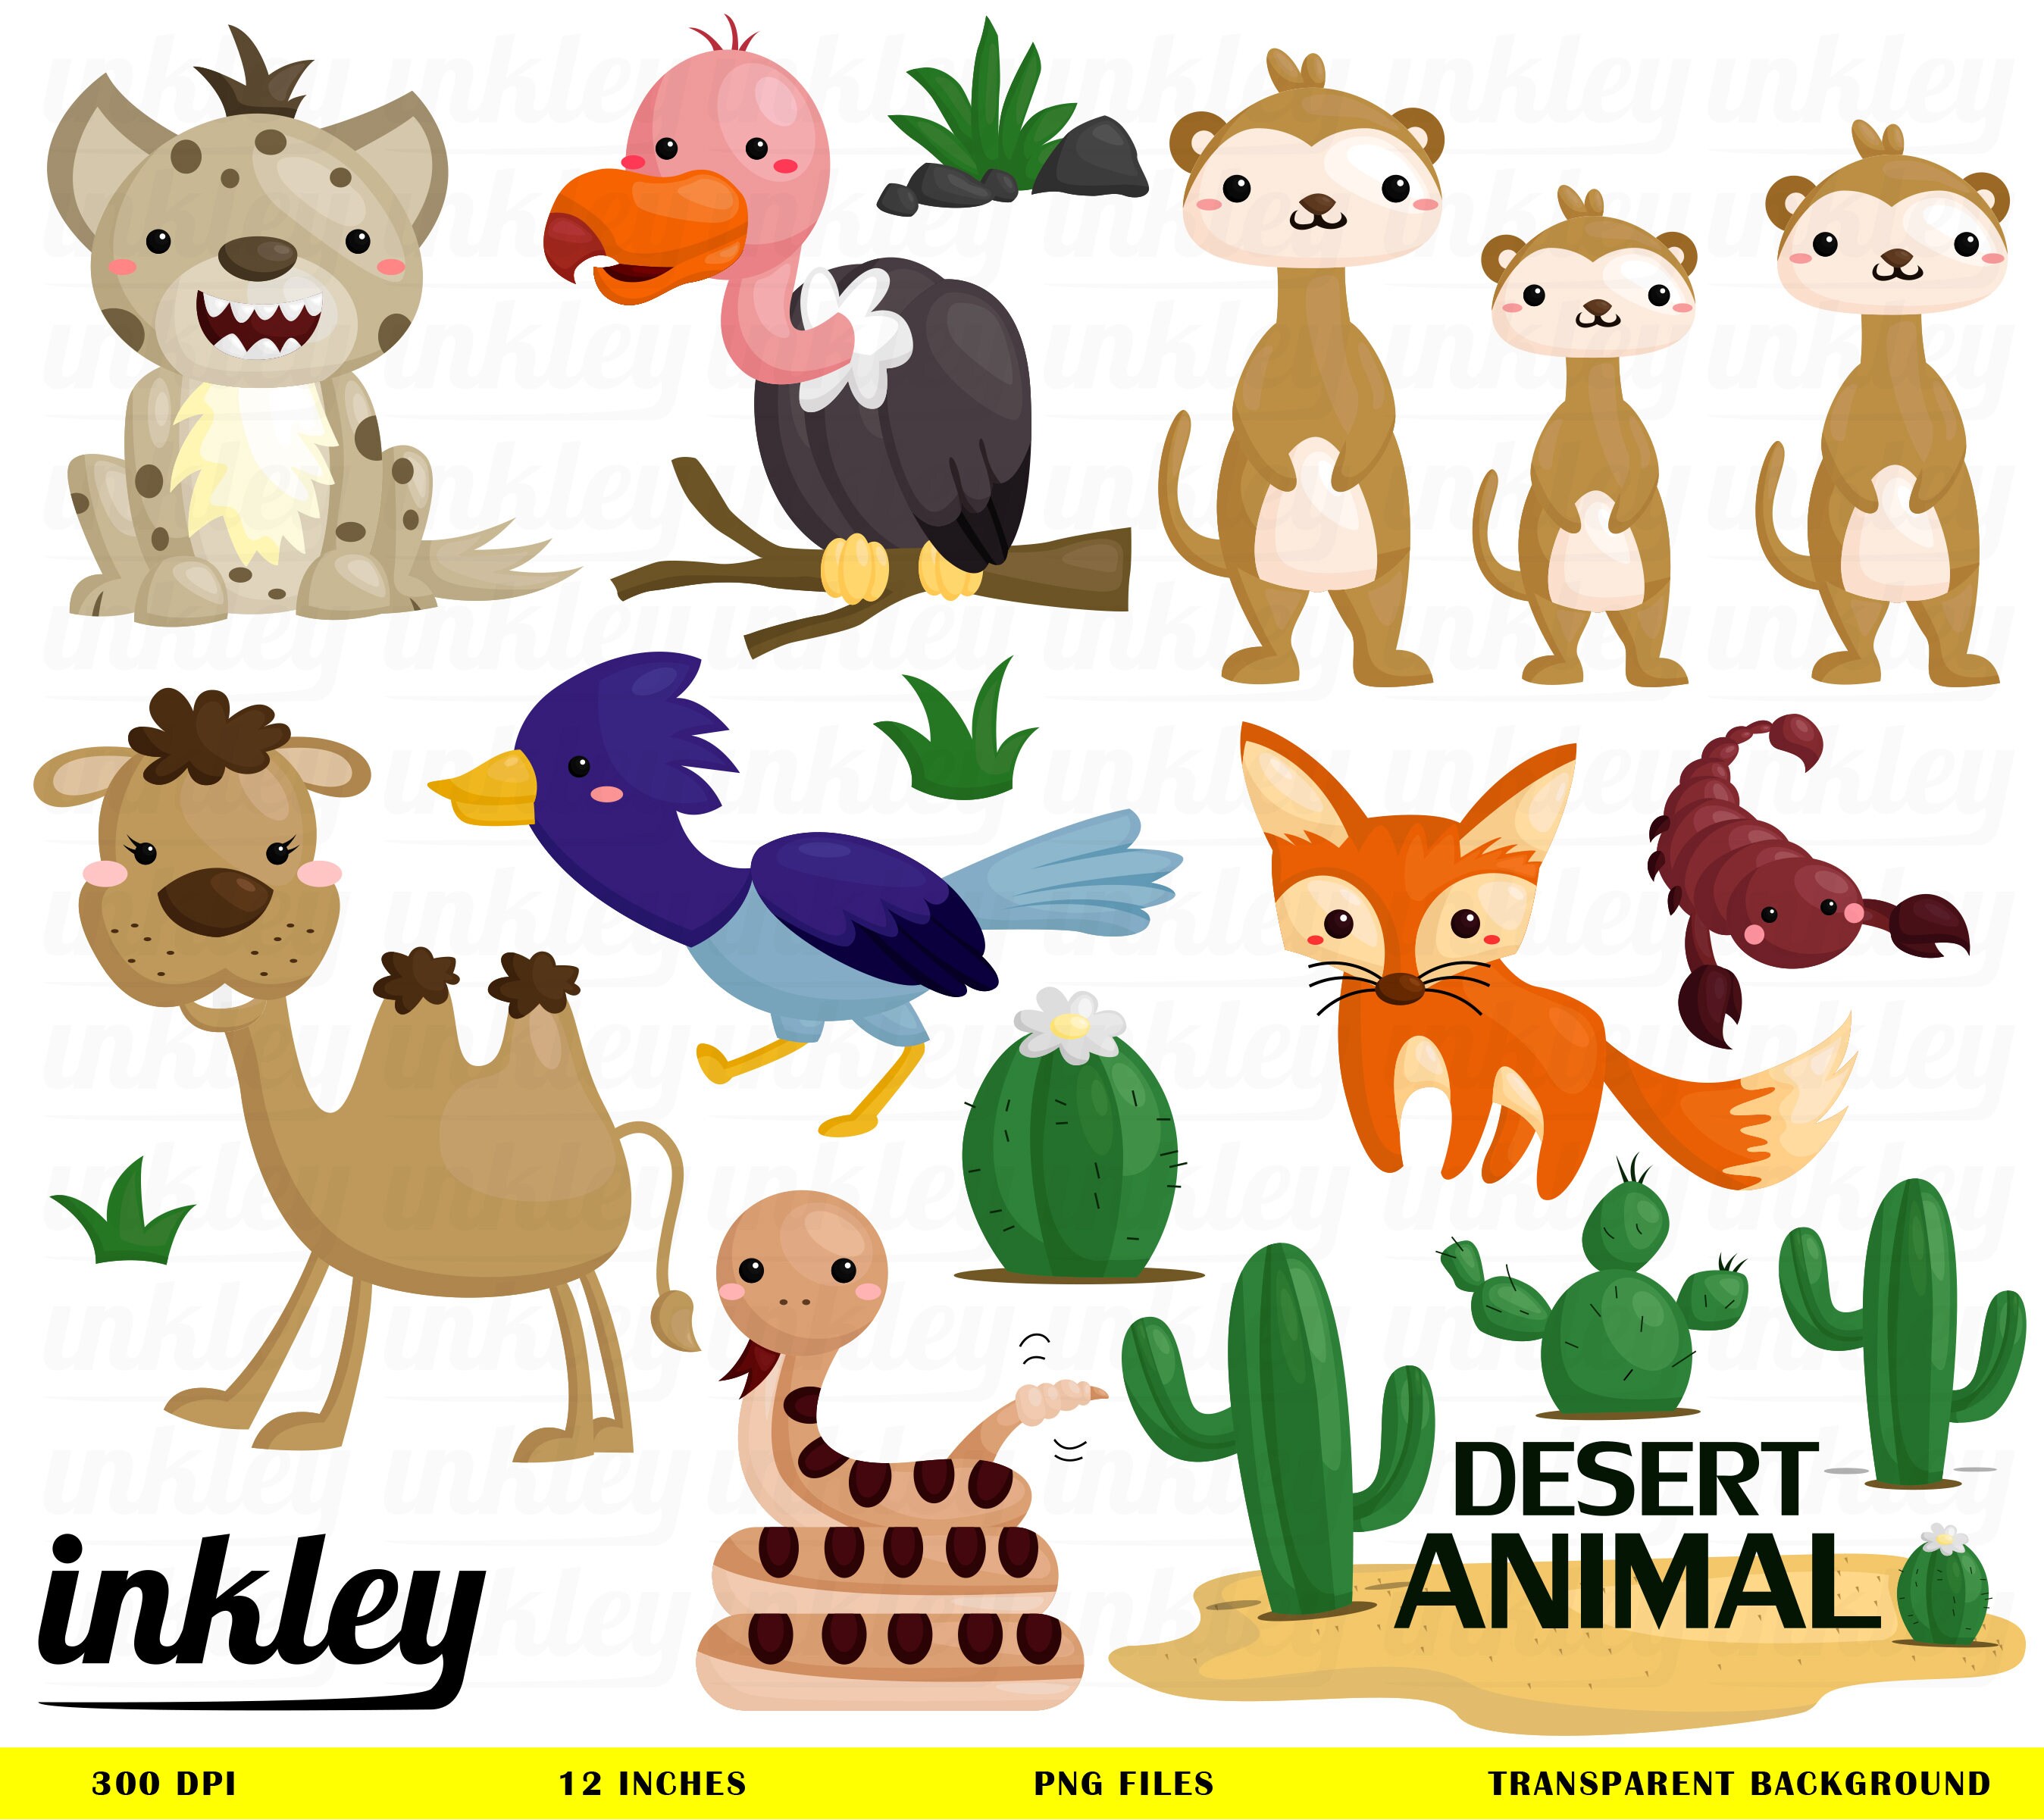 Desert Animal Clipart Desert Animal Clip Art Desert Animal